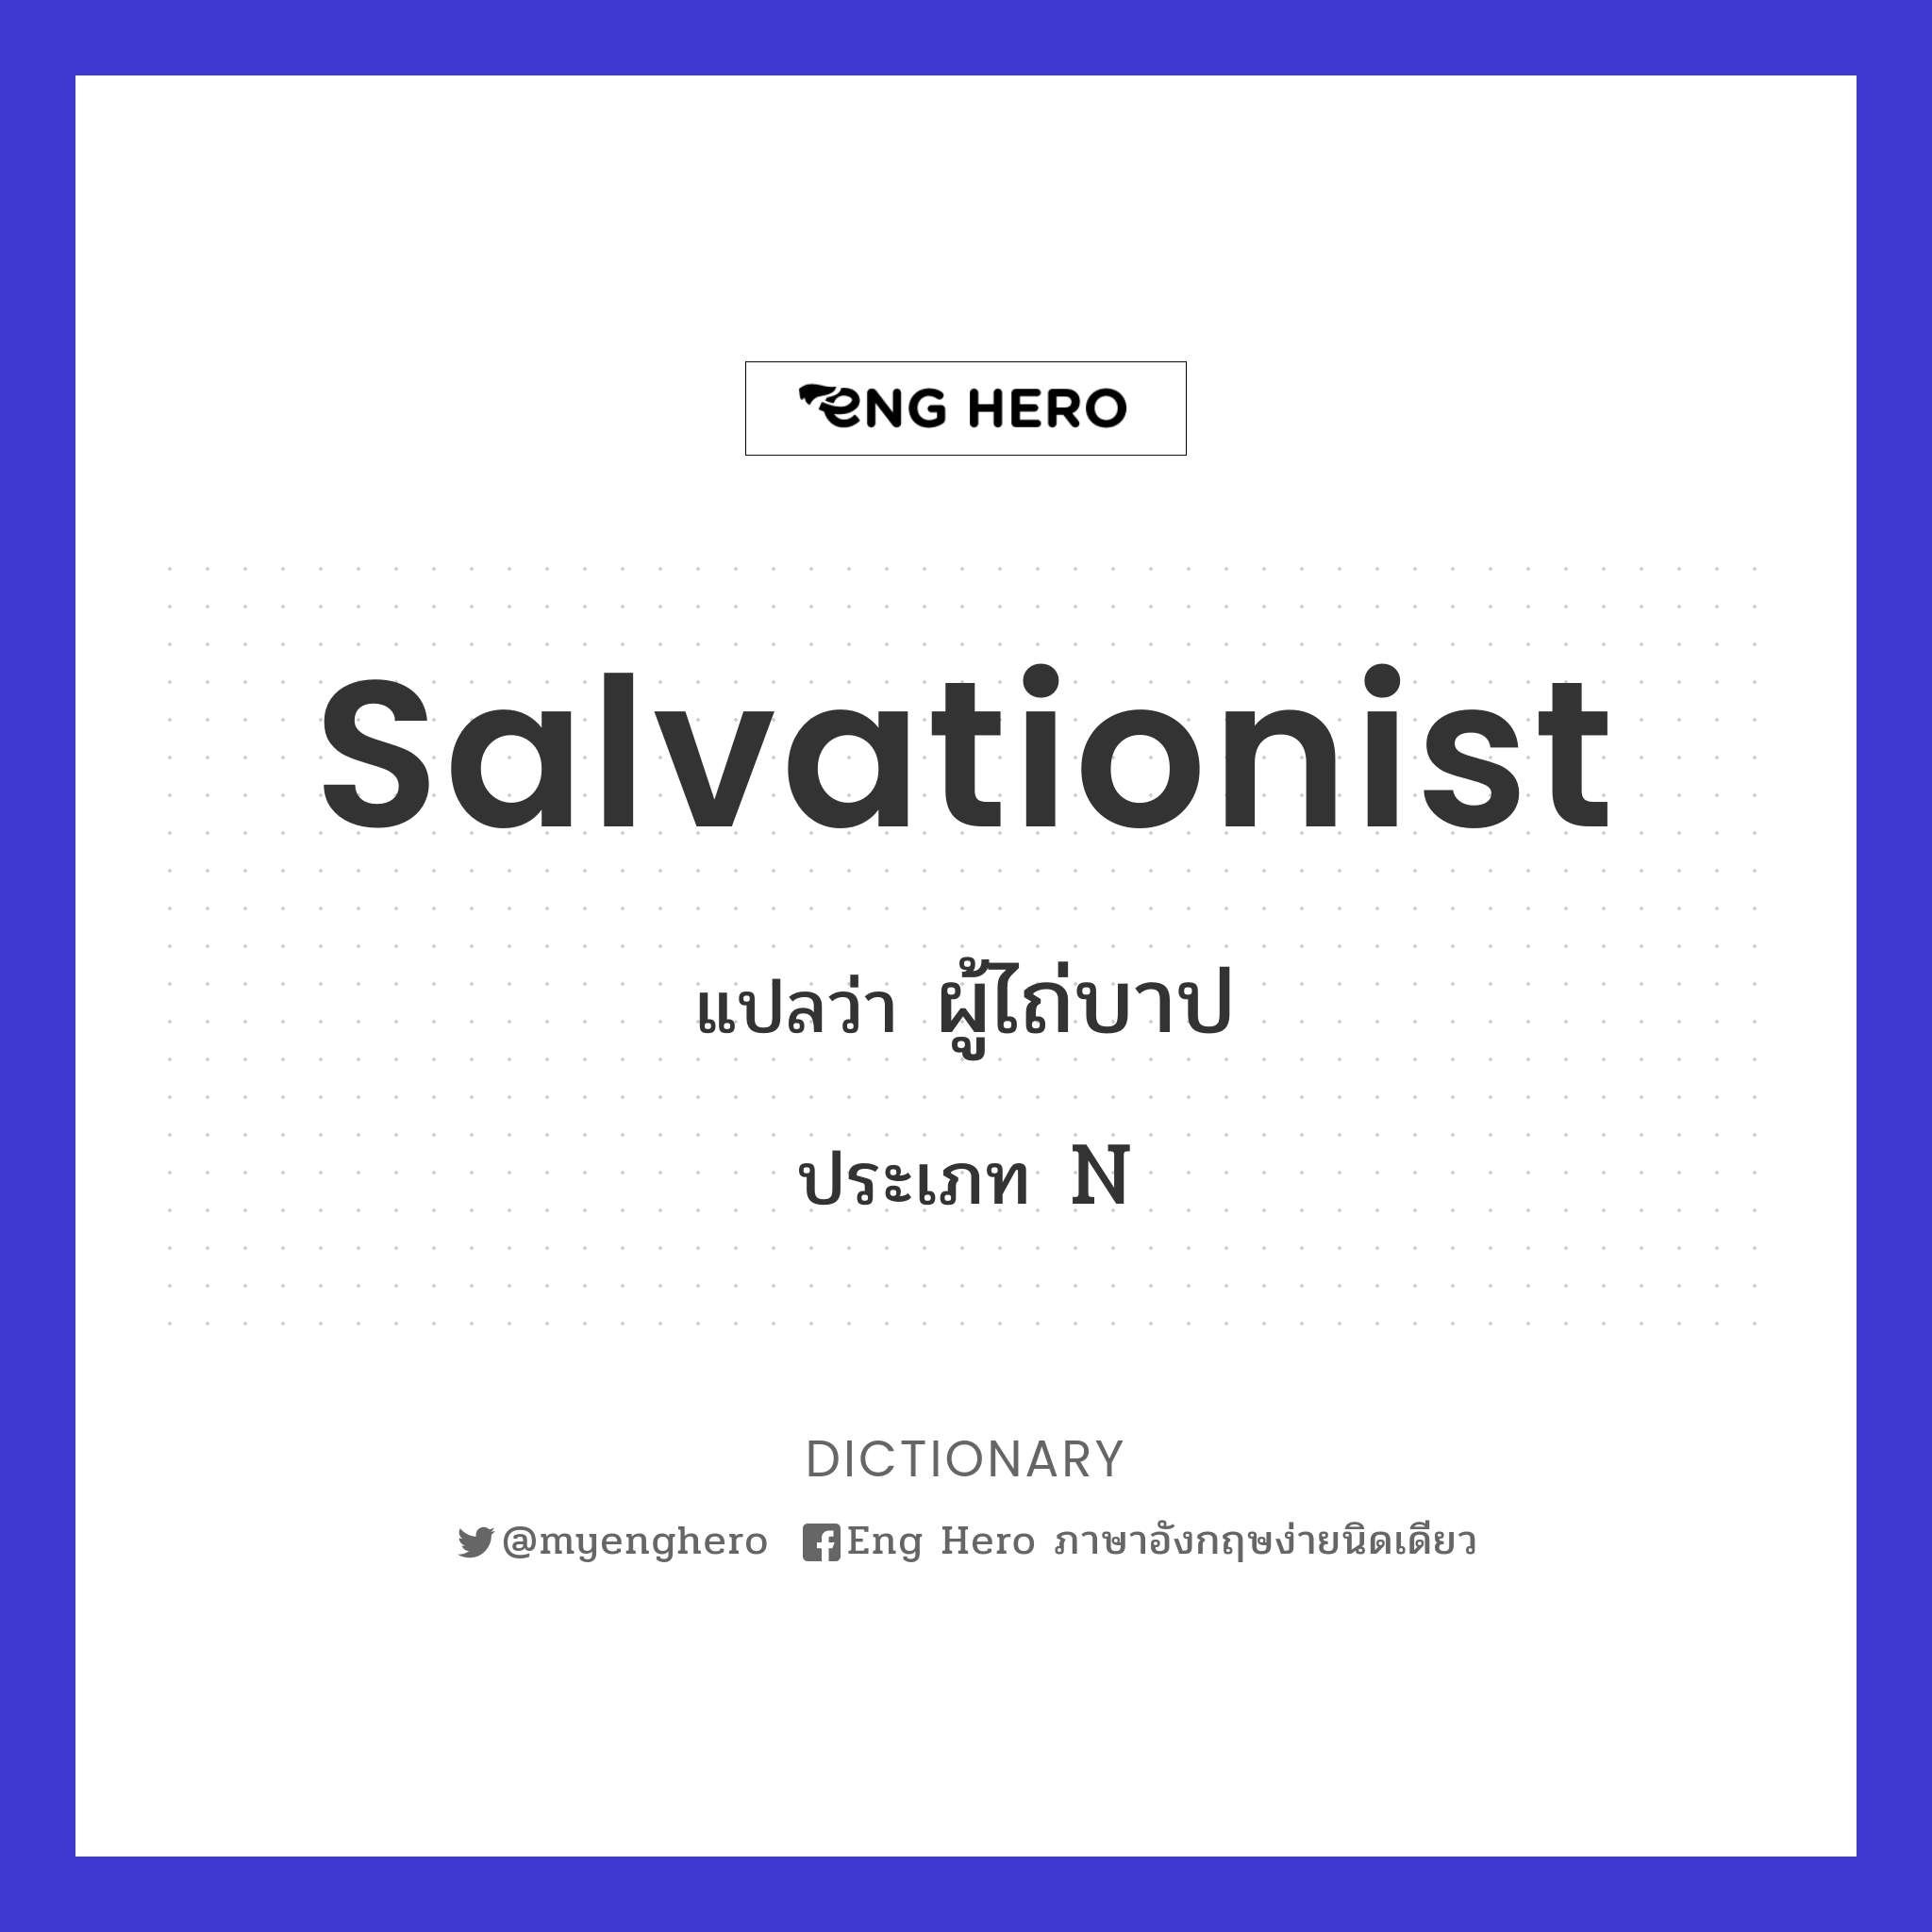 Salvationist